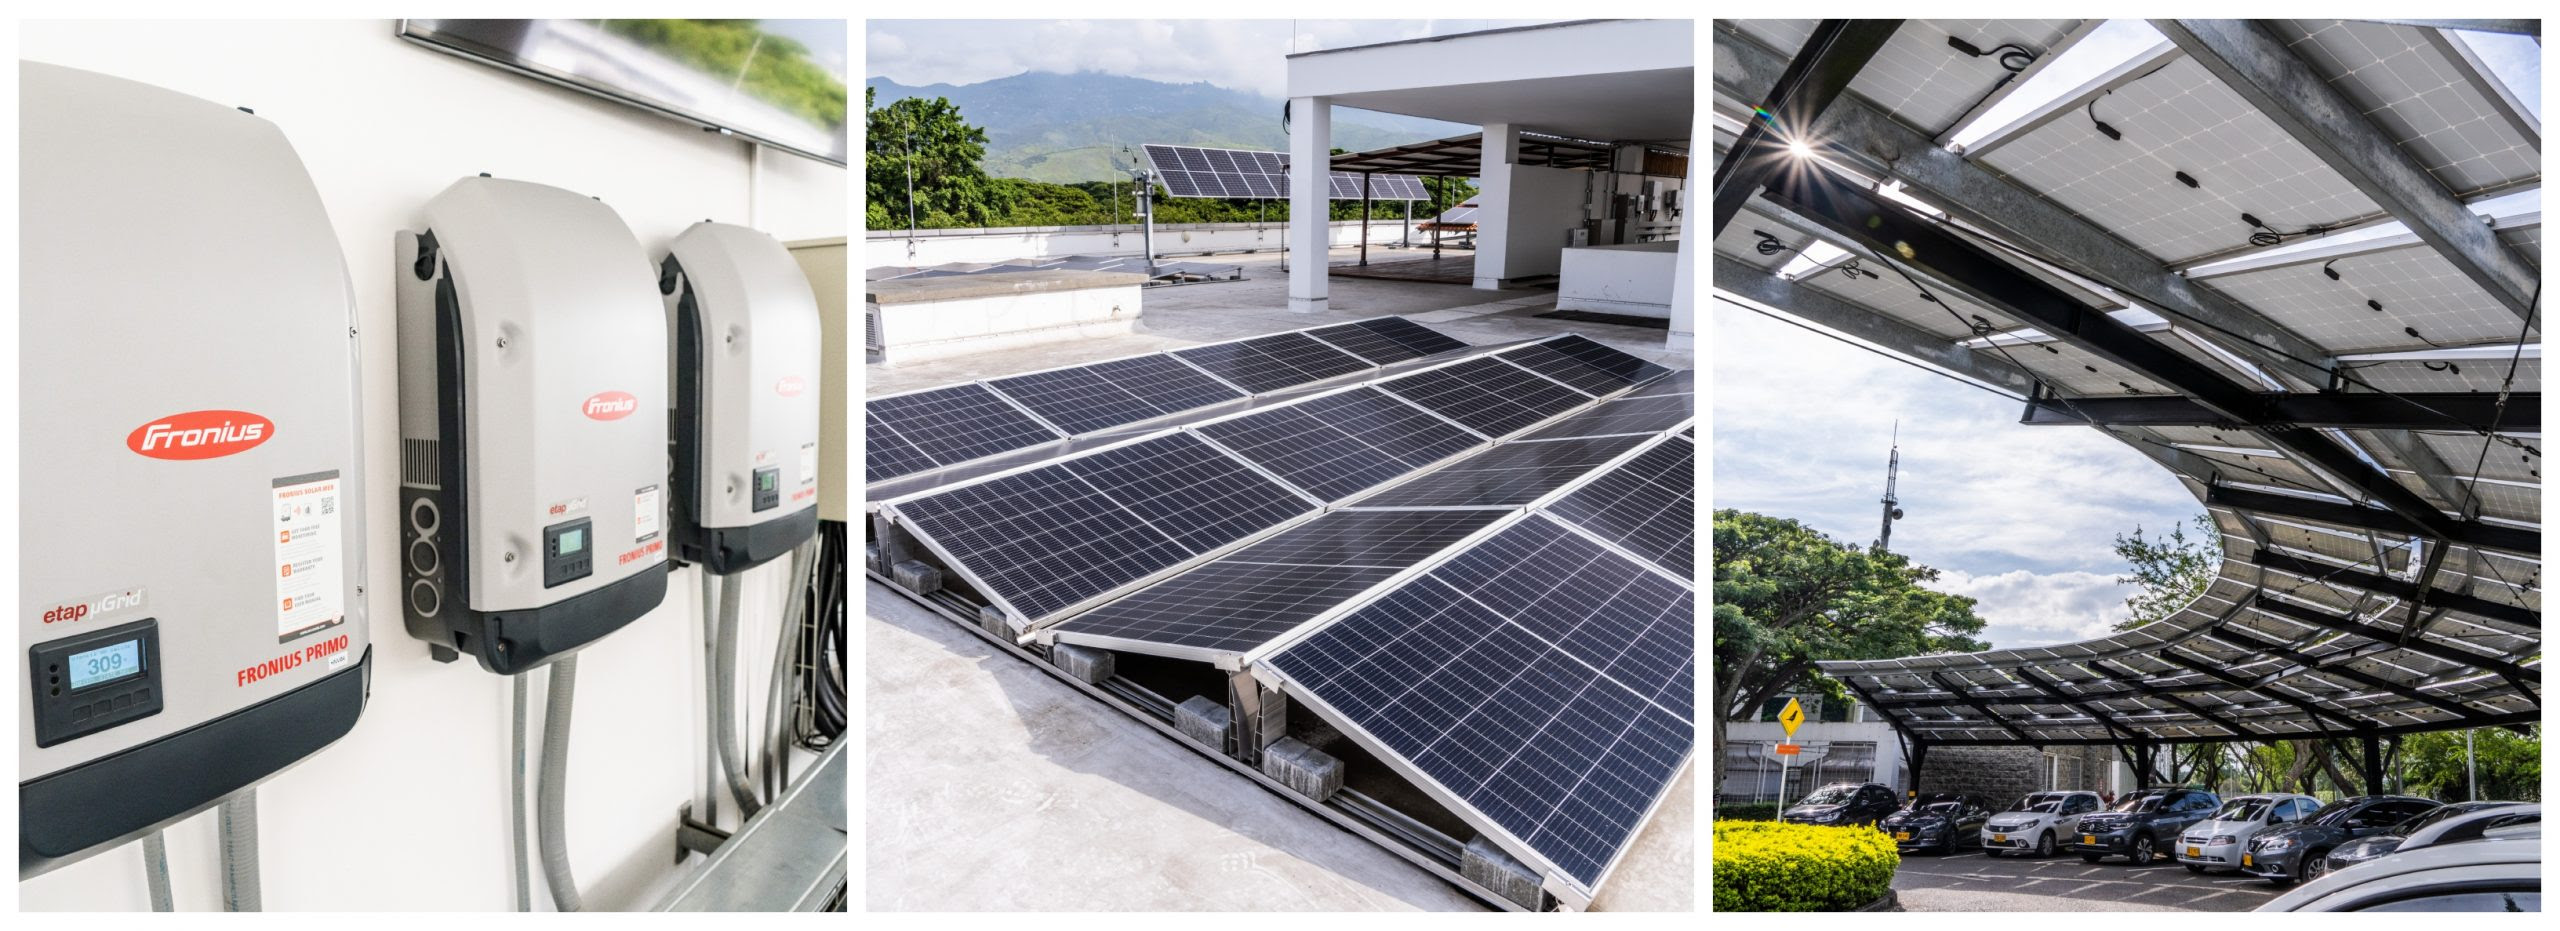 https://www.notasrosas.com/Celsia y Minciencias investigan sobre el futuro de la energía solar foltovoltaica en Colombia